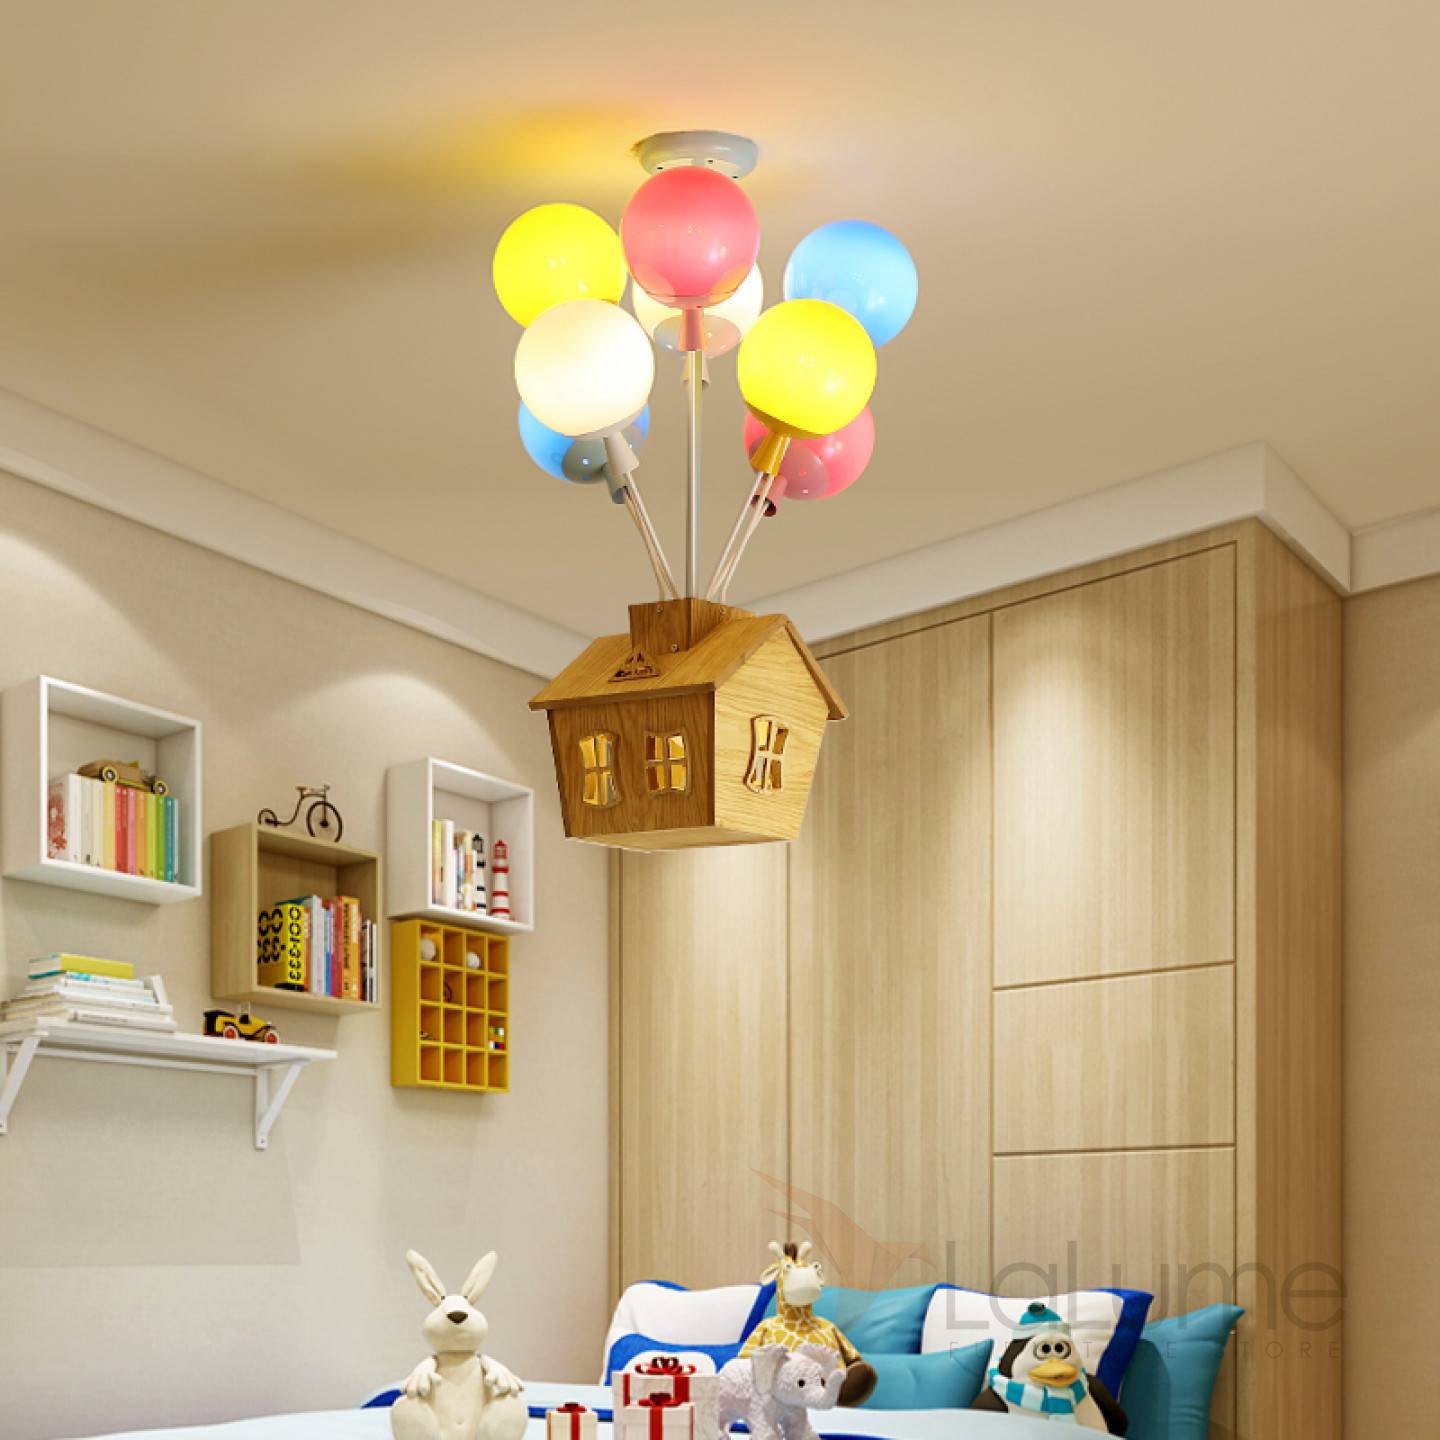 Варианты выбора дизайна и стиля светильников для детской комнаты